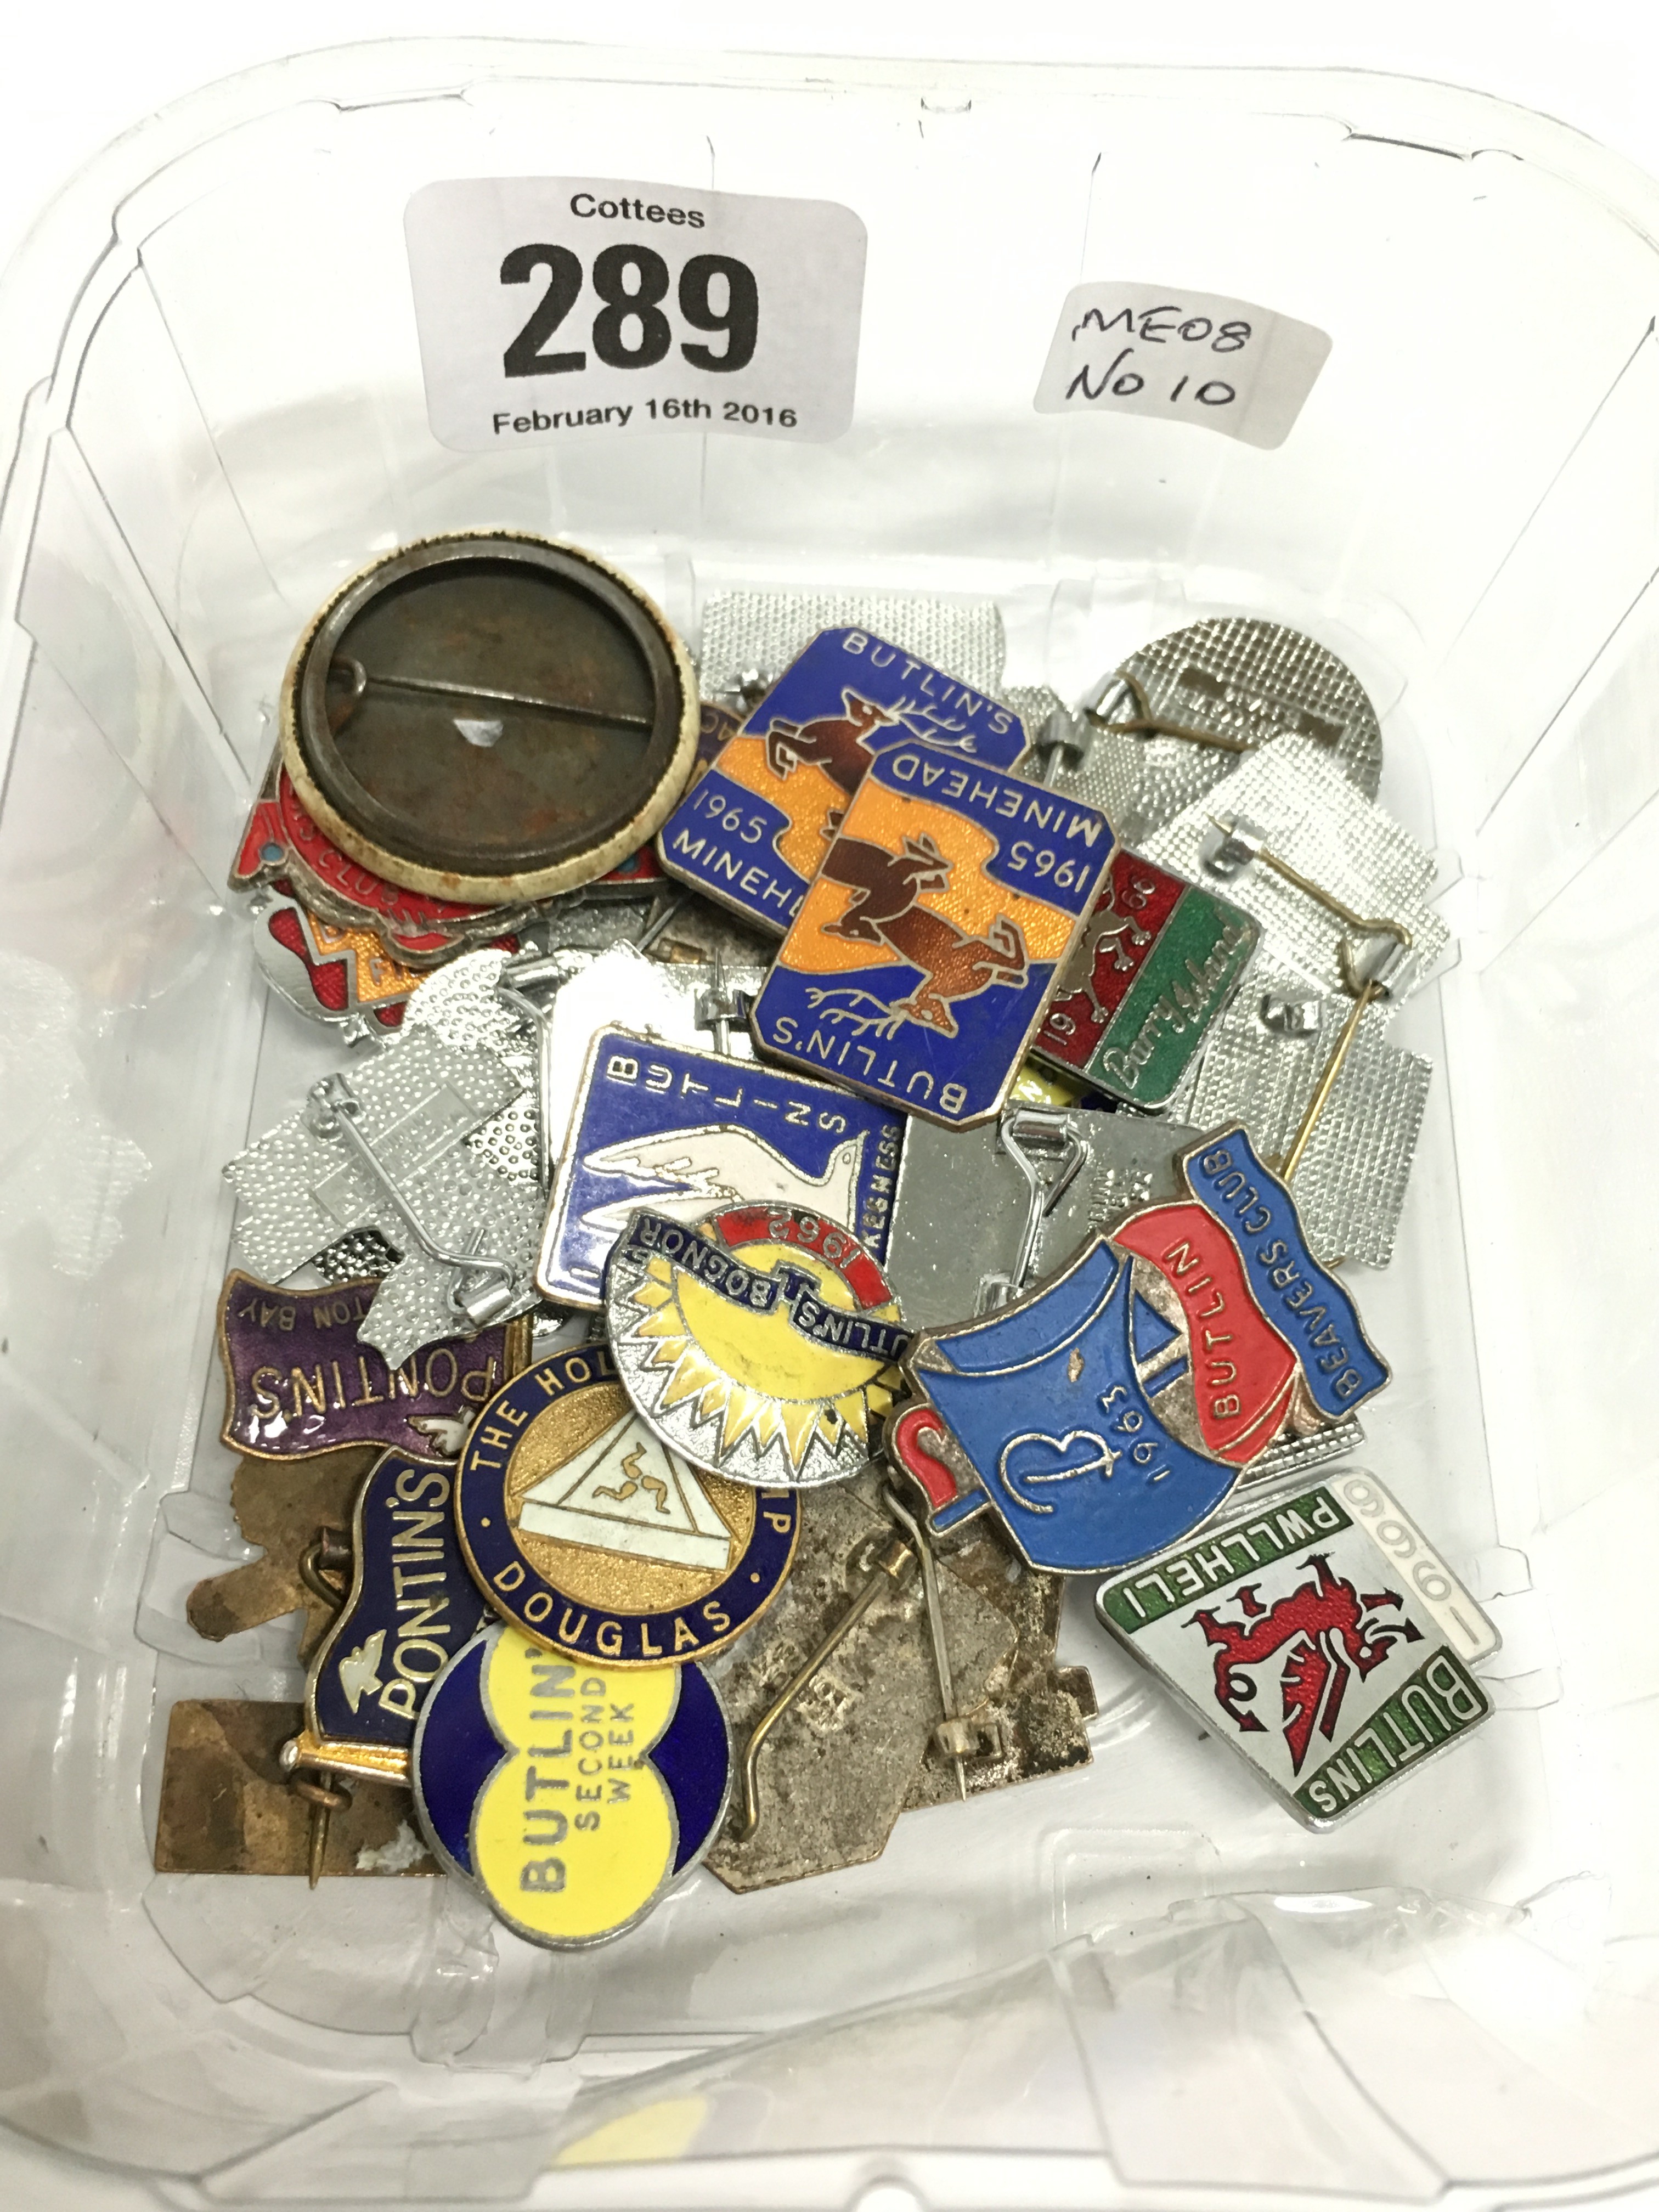 A carton containing various Butlins souvenir badges.